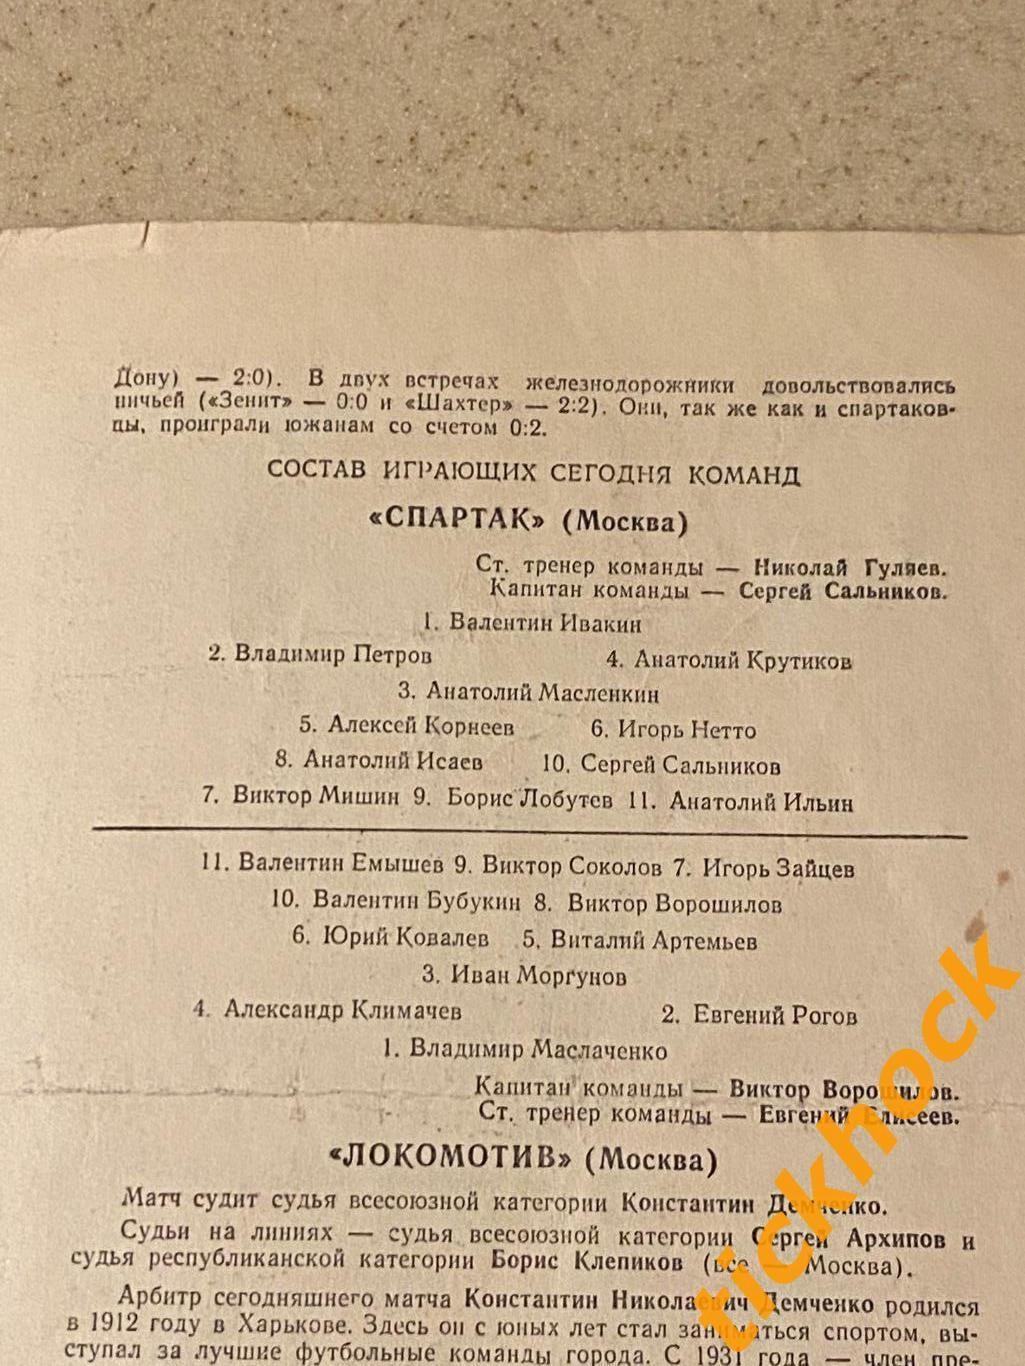 Спартак Москва - Локомотив Москва 15.10.1959 Первенство СССР - SY 2